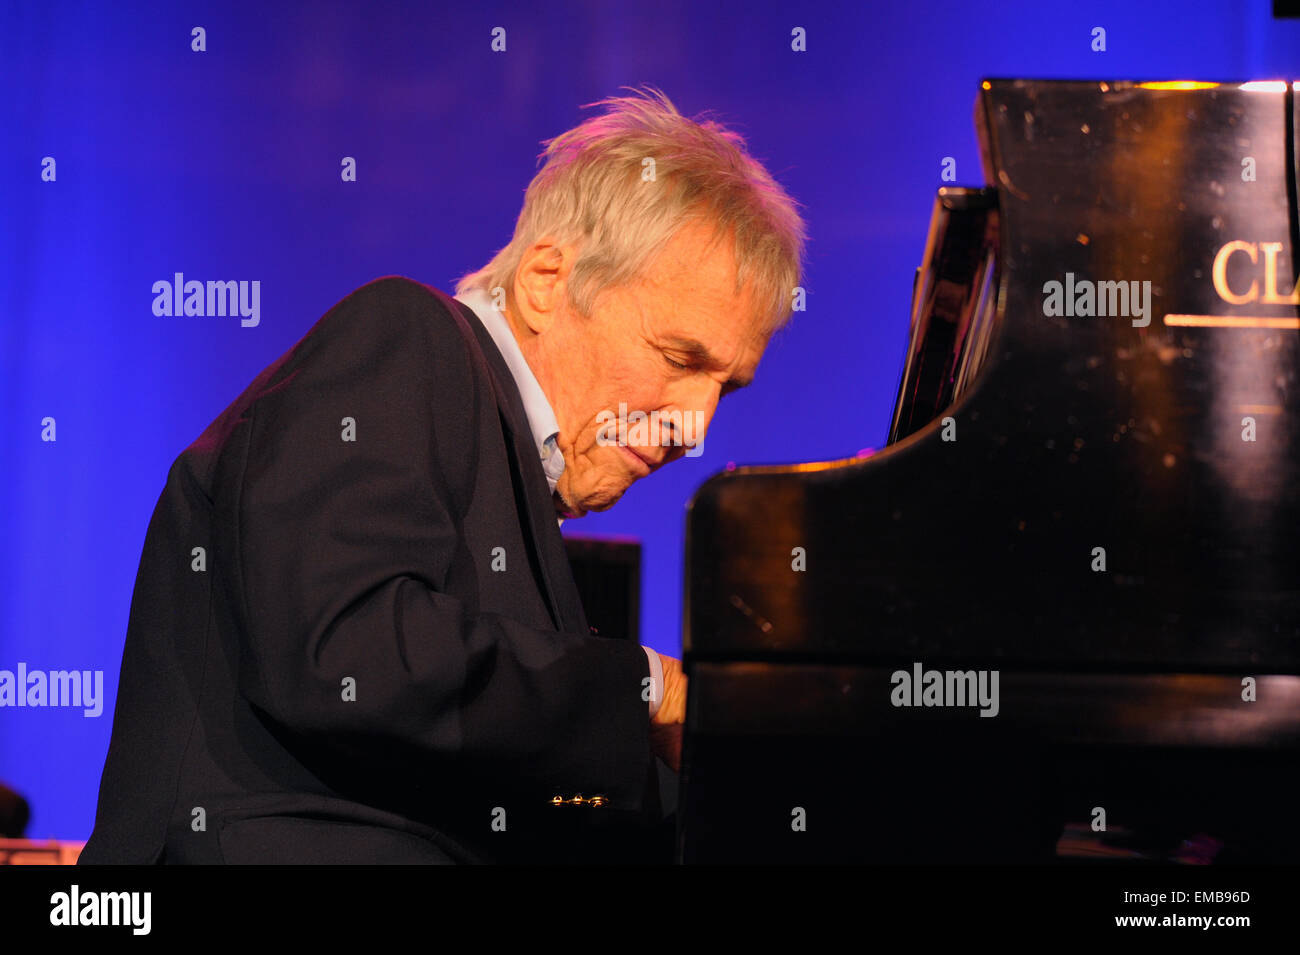 Komponist, Songwriter, Sänger und Pianist Burt Bacharach im Konzert am Klavier. Stockfoto